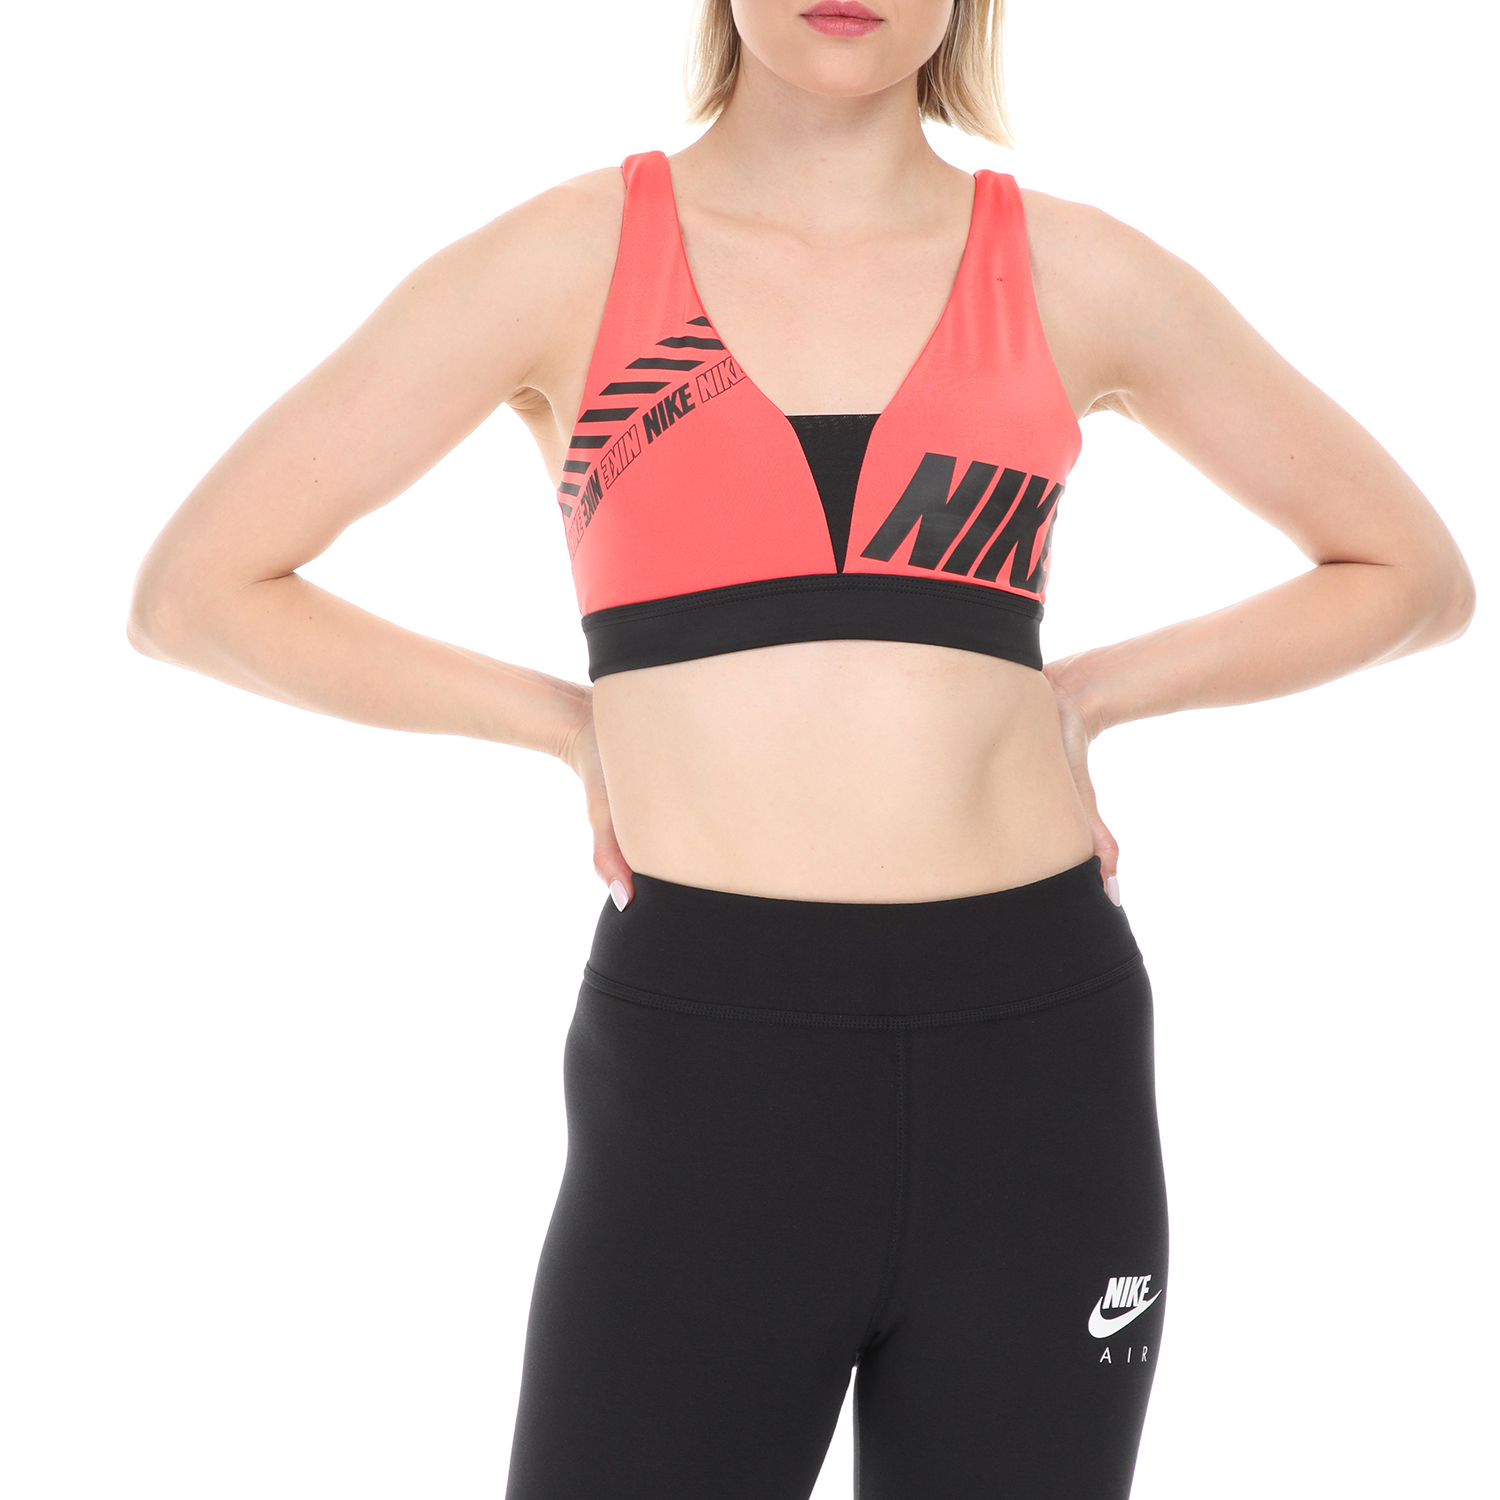 NIKE - Γυναικείο αθλητικό μπουστάκι NIKE SPRT DSTRT INDY PLUNGE ροζ Γυναικεία/Ρούχα/Αθλητικά/Μπουστάκια